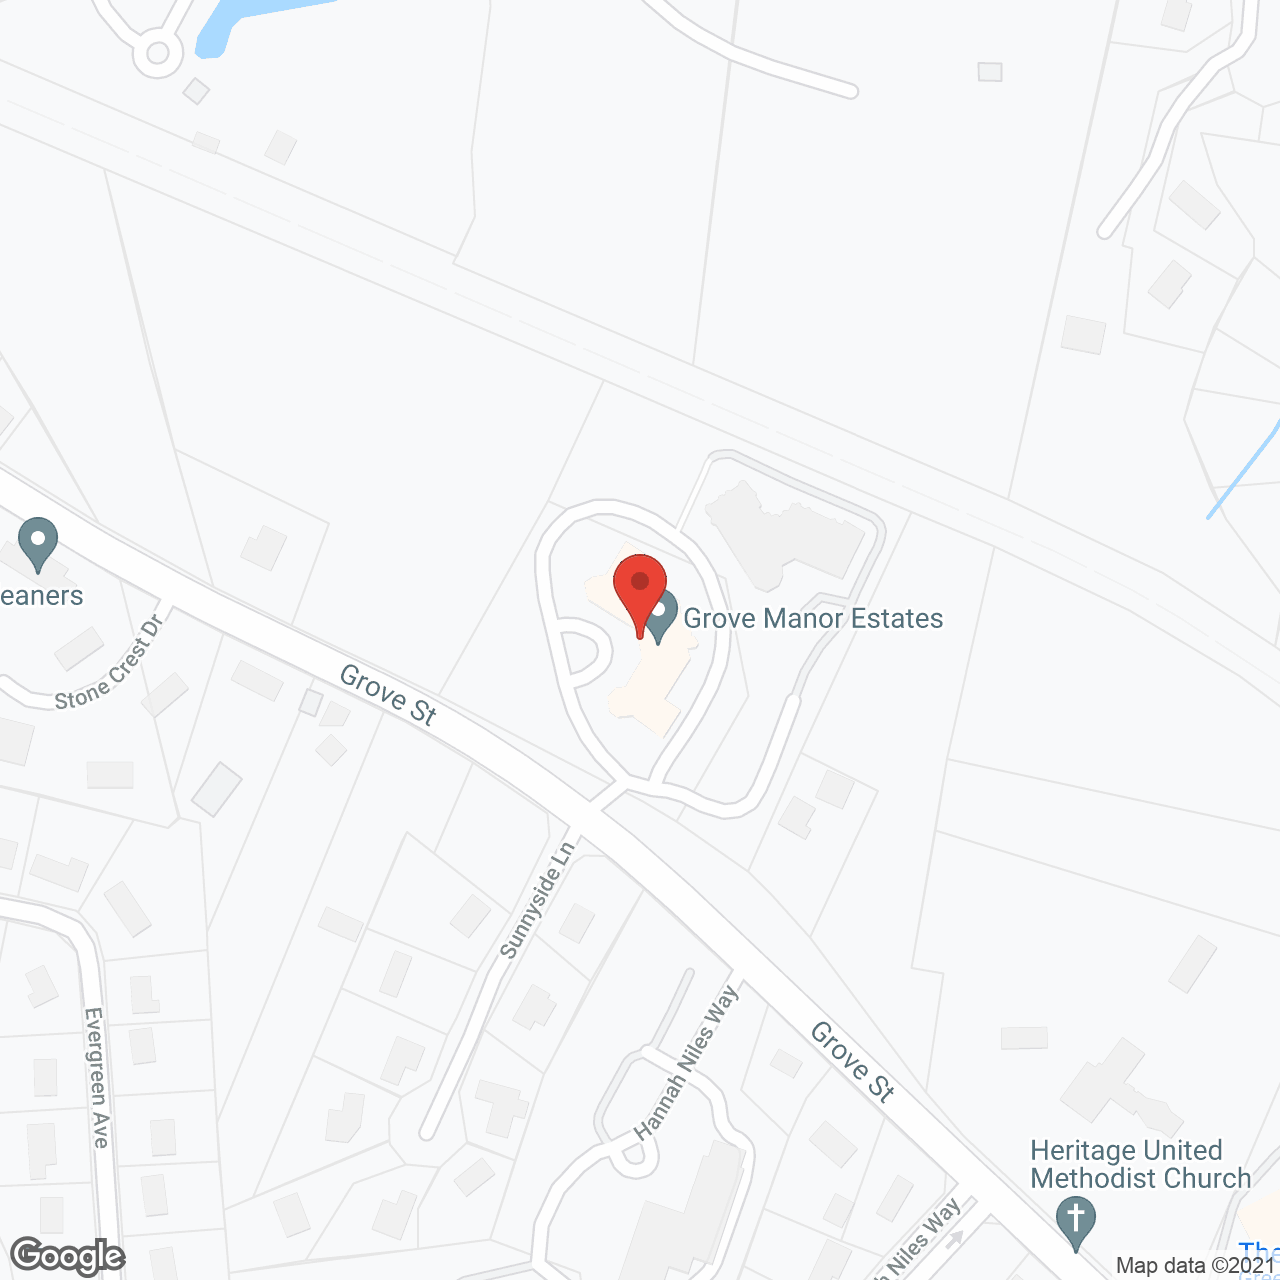 Grove Manor Estates in google map